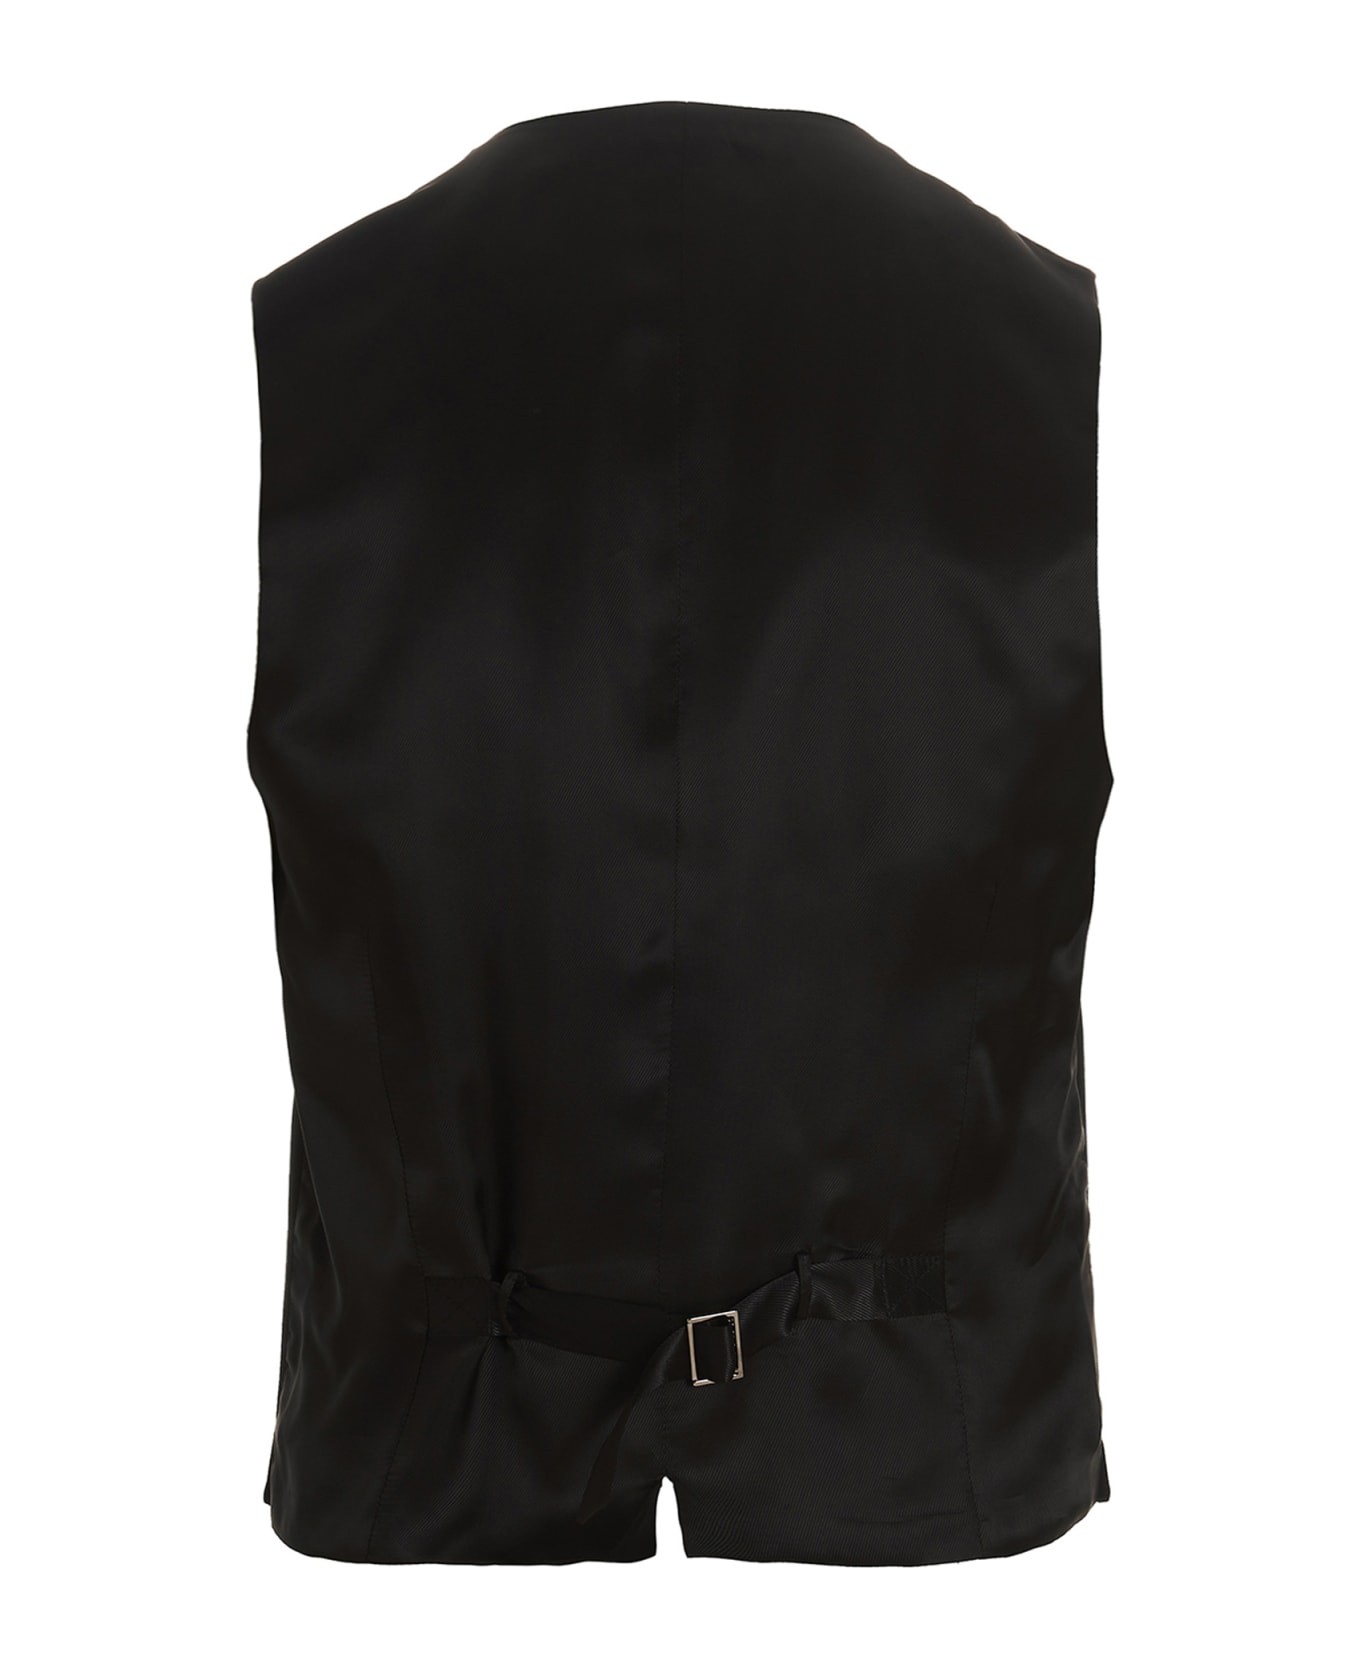 Dolce & Gabbana 'dg Essential' Suit - Black   スーツ